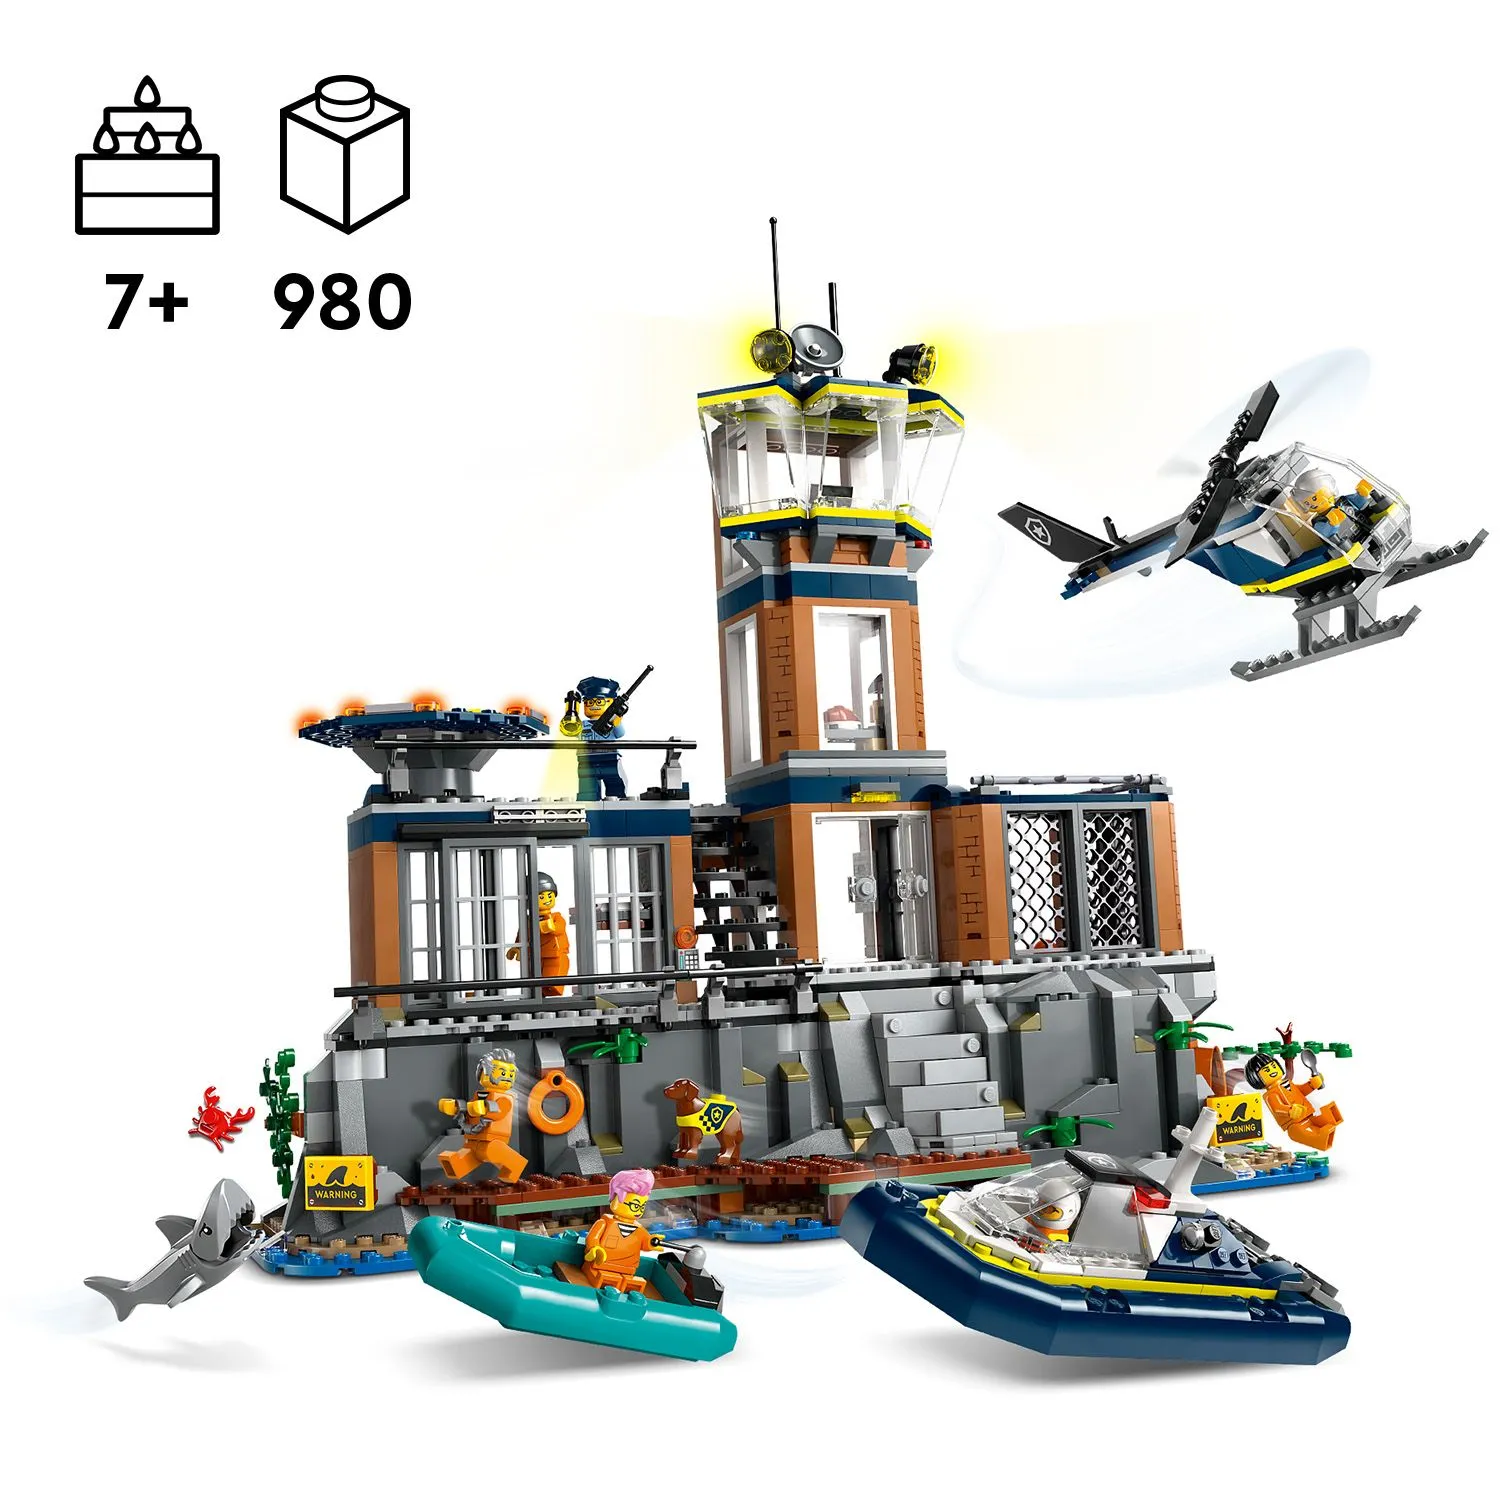 Набір LEGO® для конструювання та гри дітей від 7 років